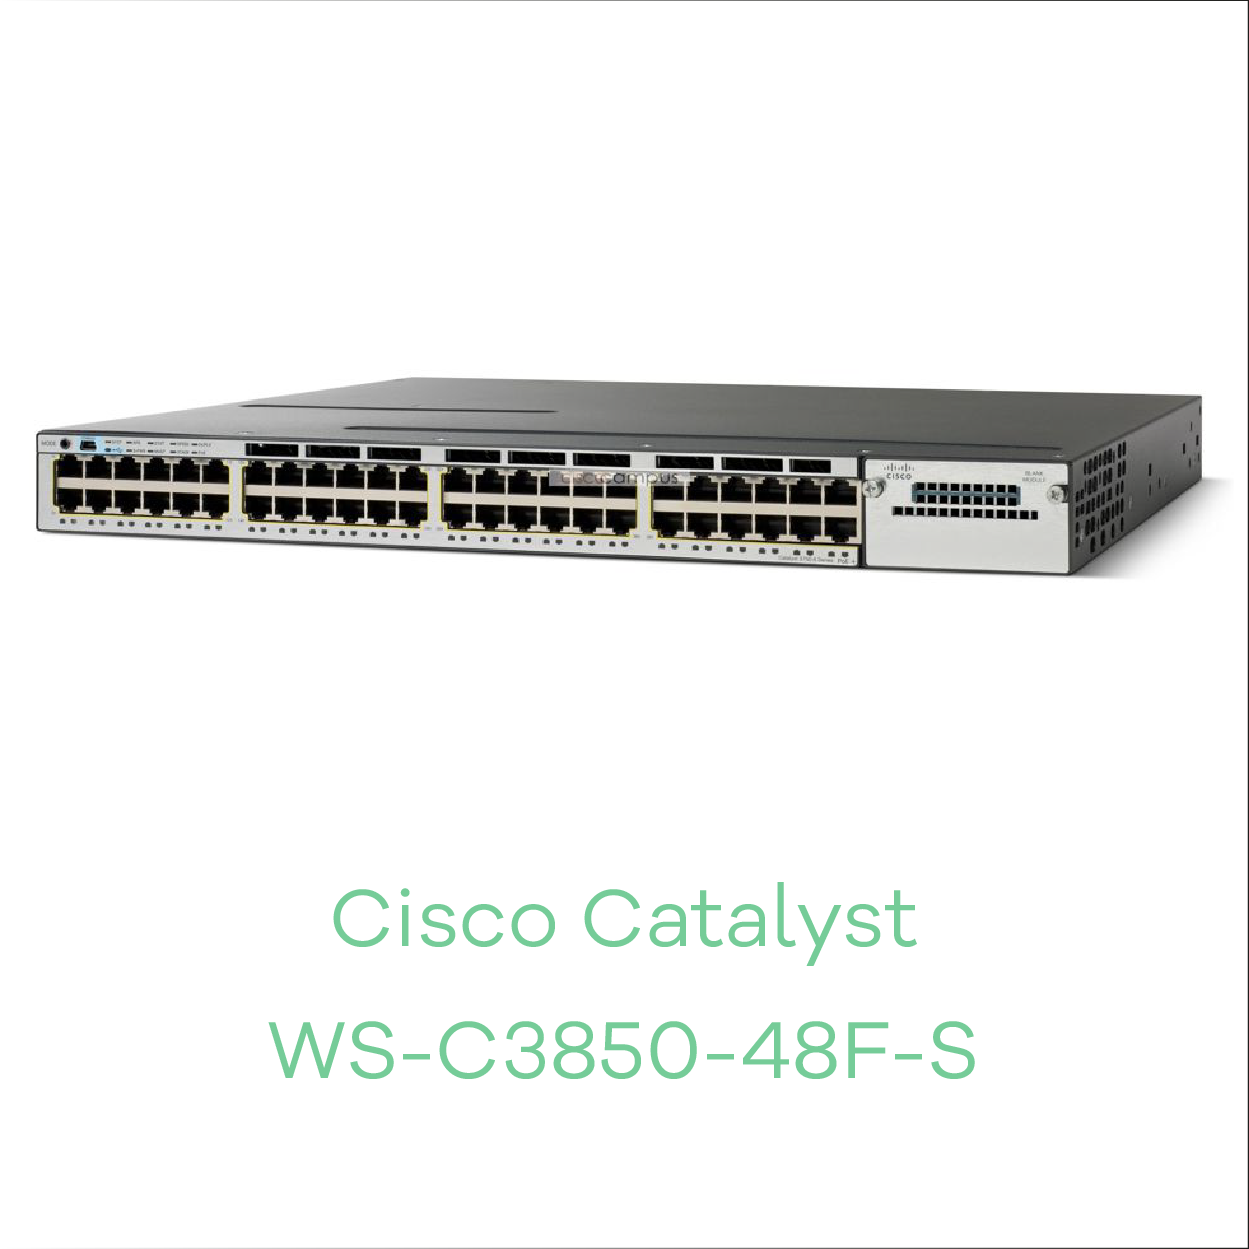 Cisco Catalyst WS-C3850-48F-S